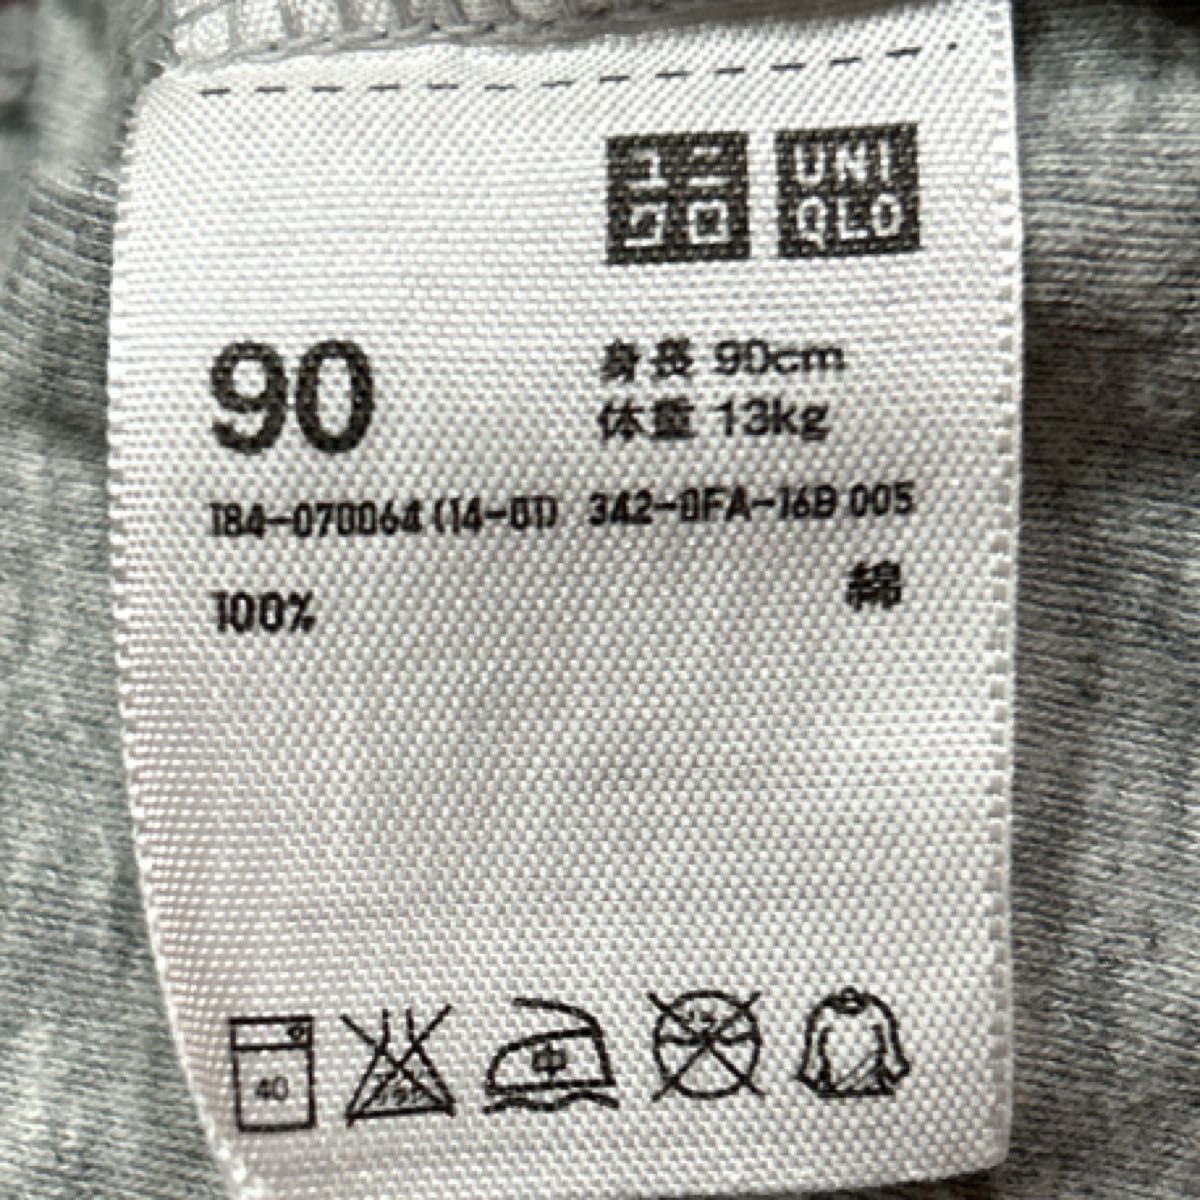 【UNIQLO】(USED)ユニクロ ハイネック 長袖Tシャツ 綿100% 90cm 2枚セット